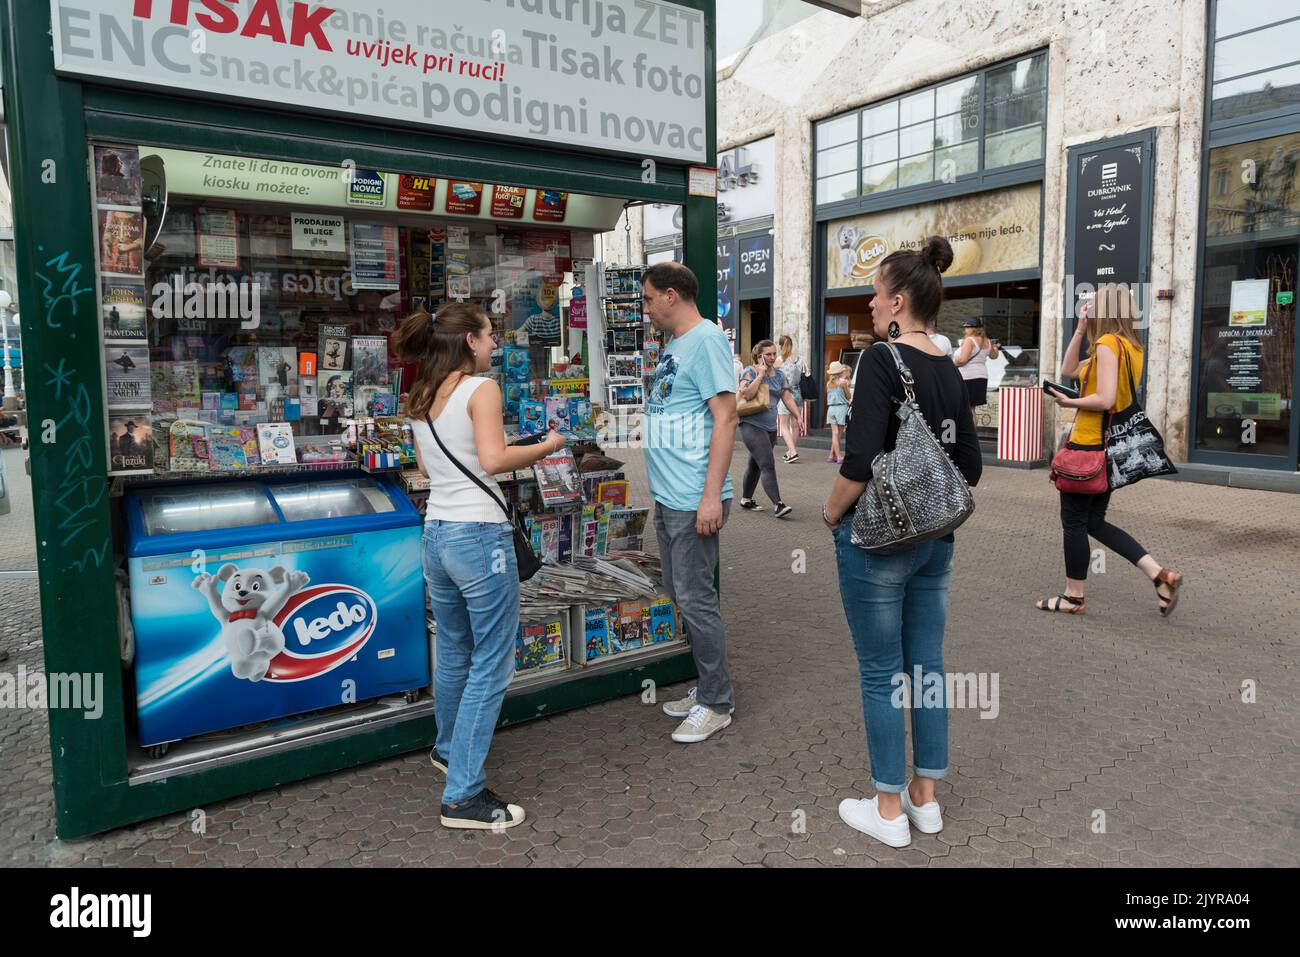 Ein Kiosk in Tisak, der Artikel wie Sonnenbrillen, Sonnenschirme, Zigaretten, Feuerzeuge, Zeitschriften, Batterien und vieles mehr verkauft. Zagreb, Kroatien, Europa Stockfoto